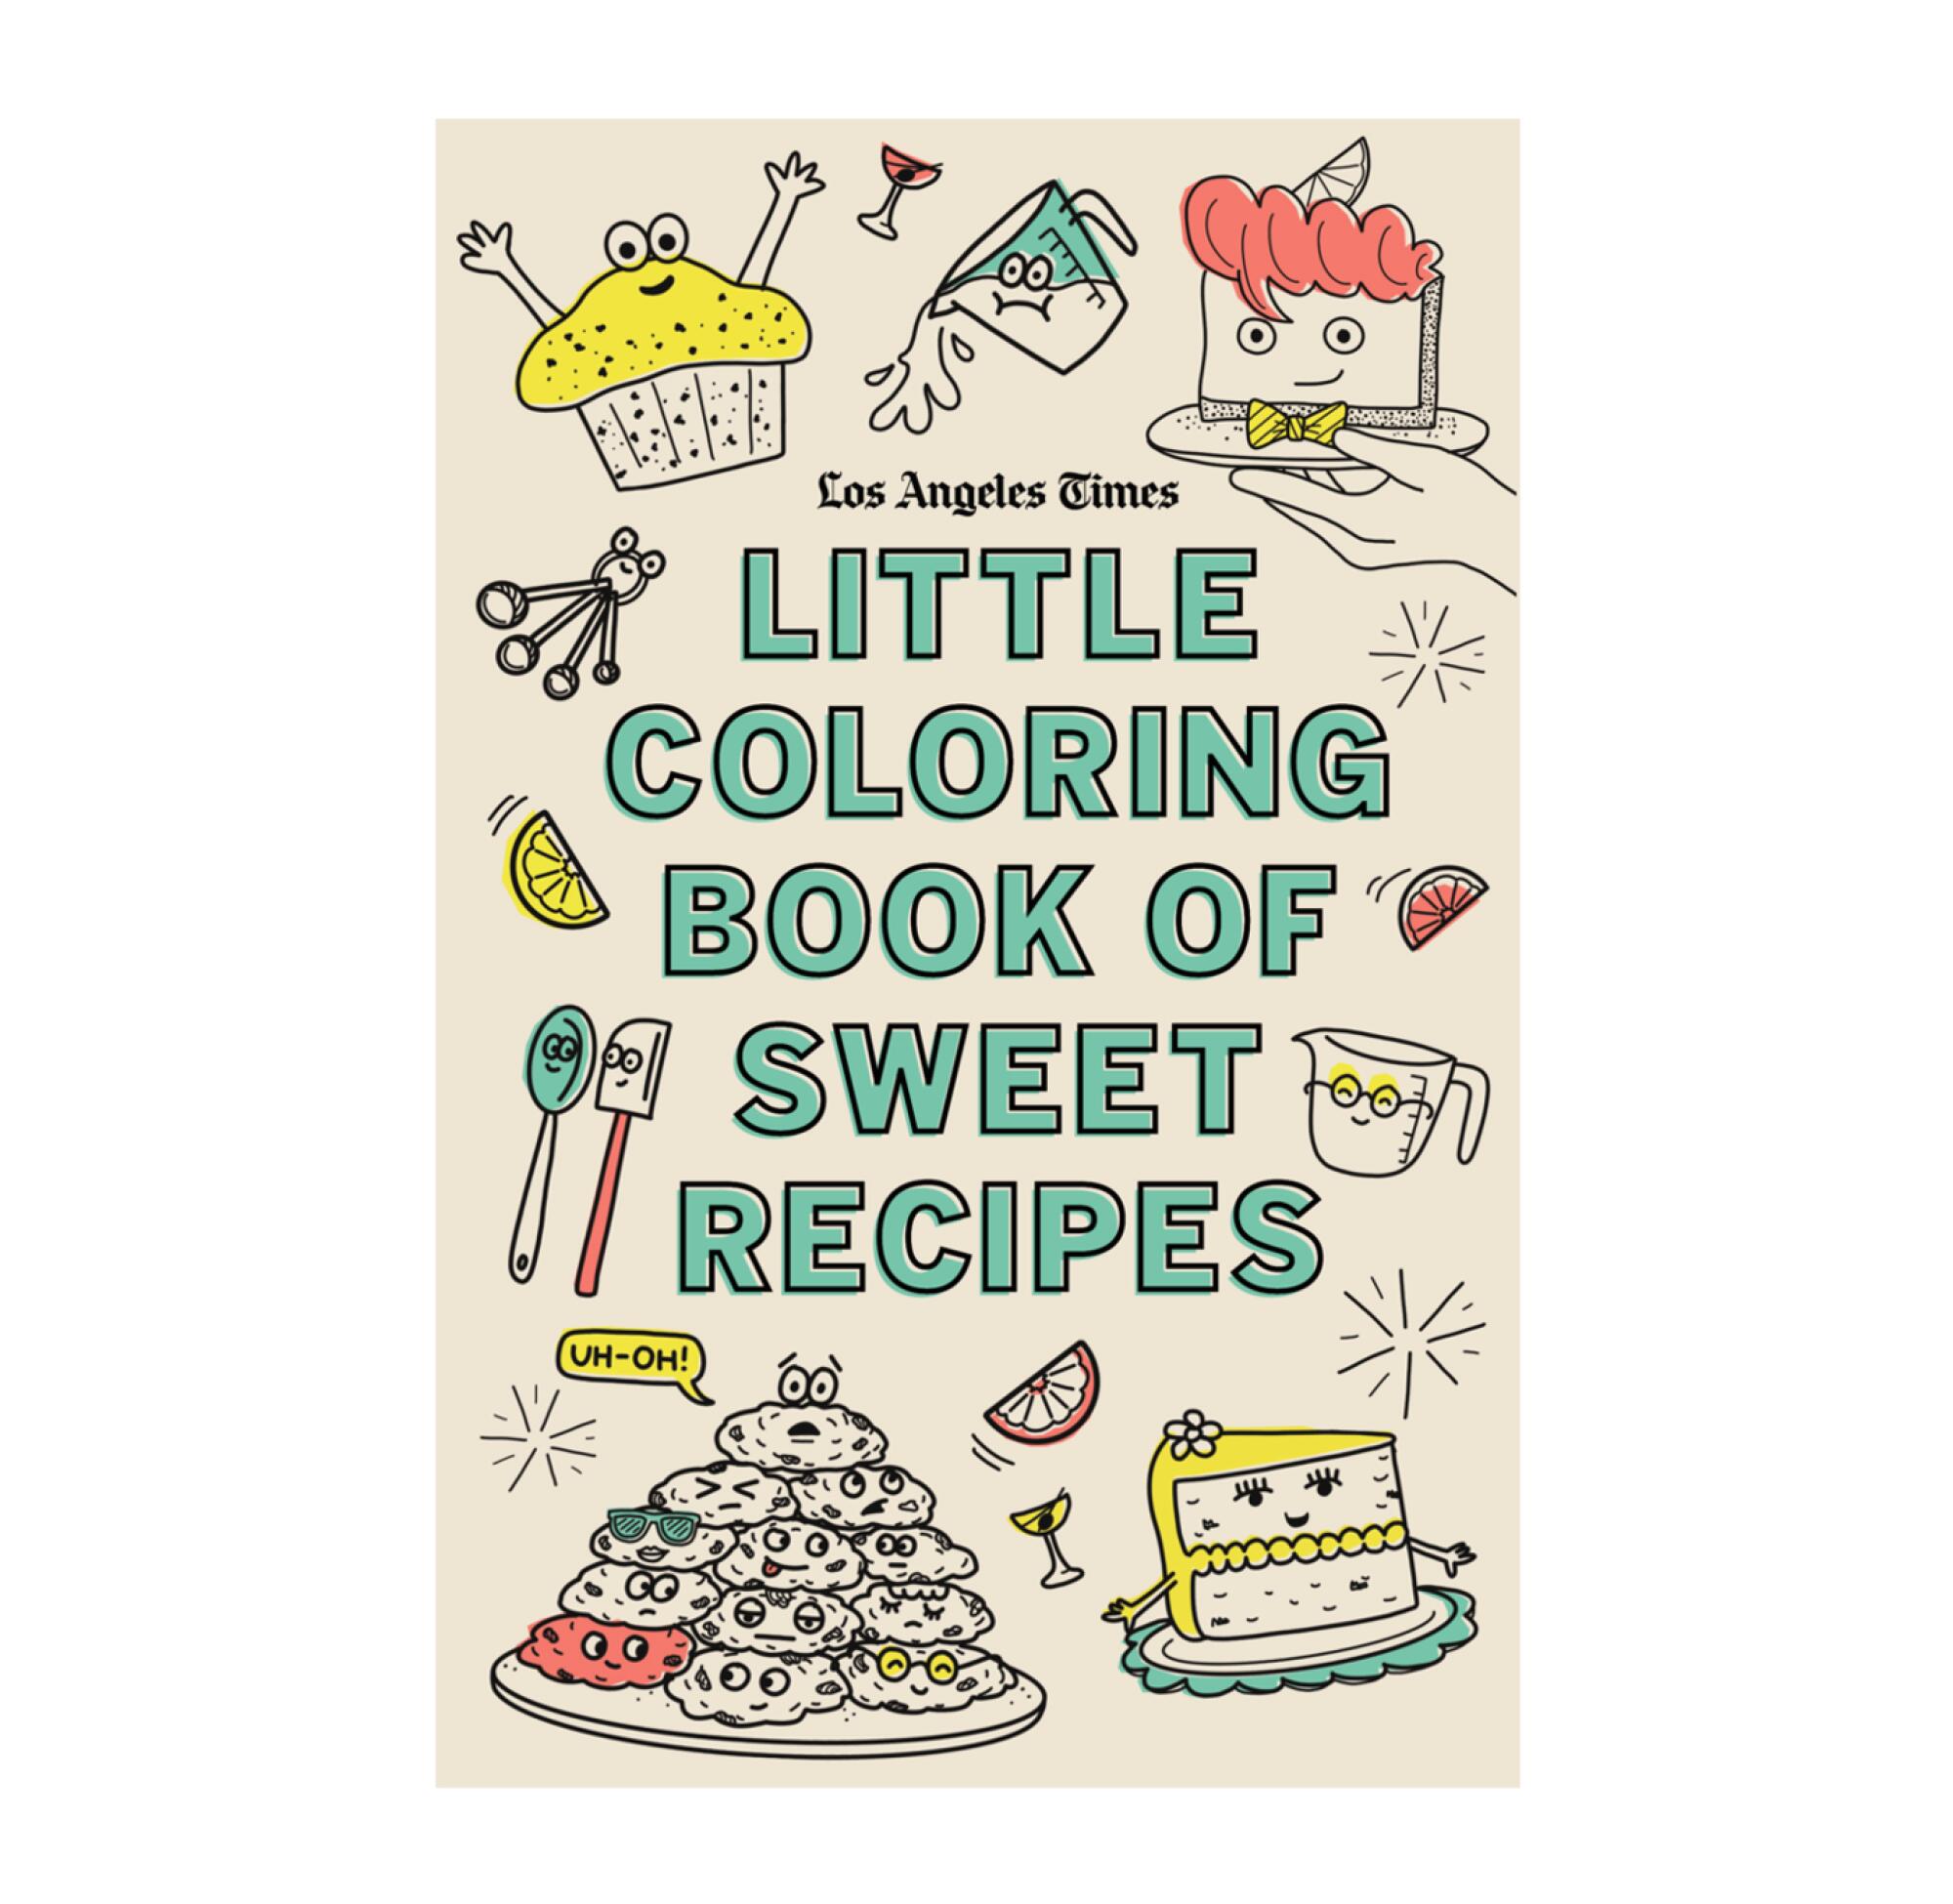 LAT recipes coloring book